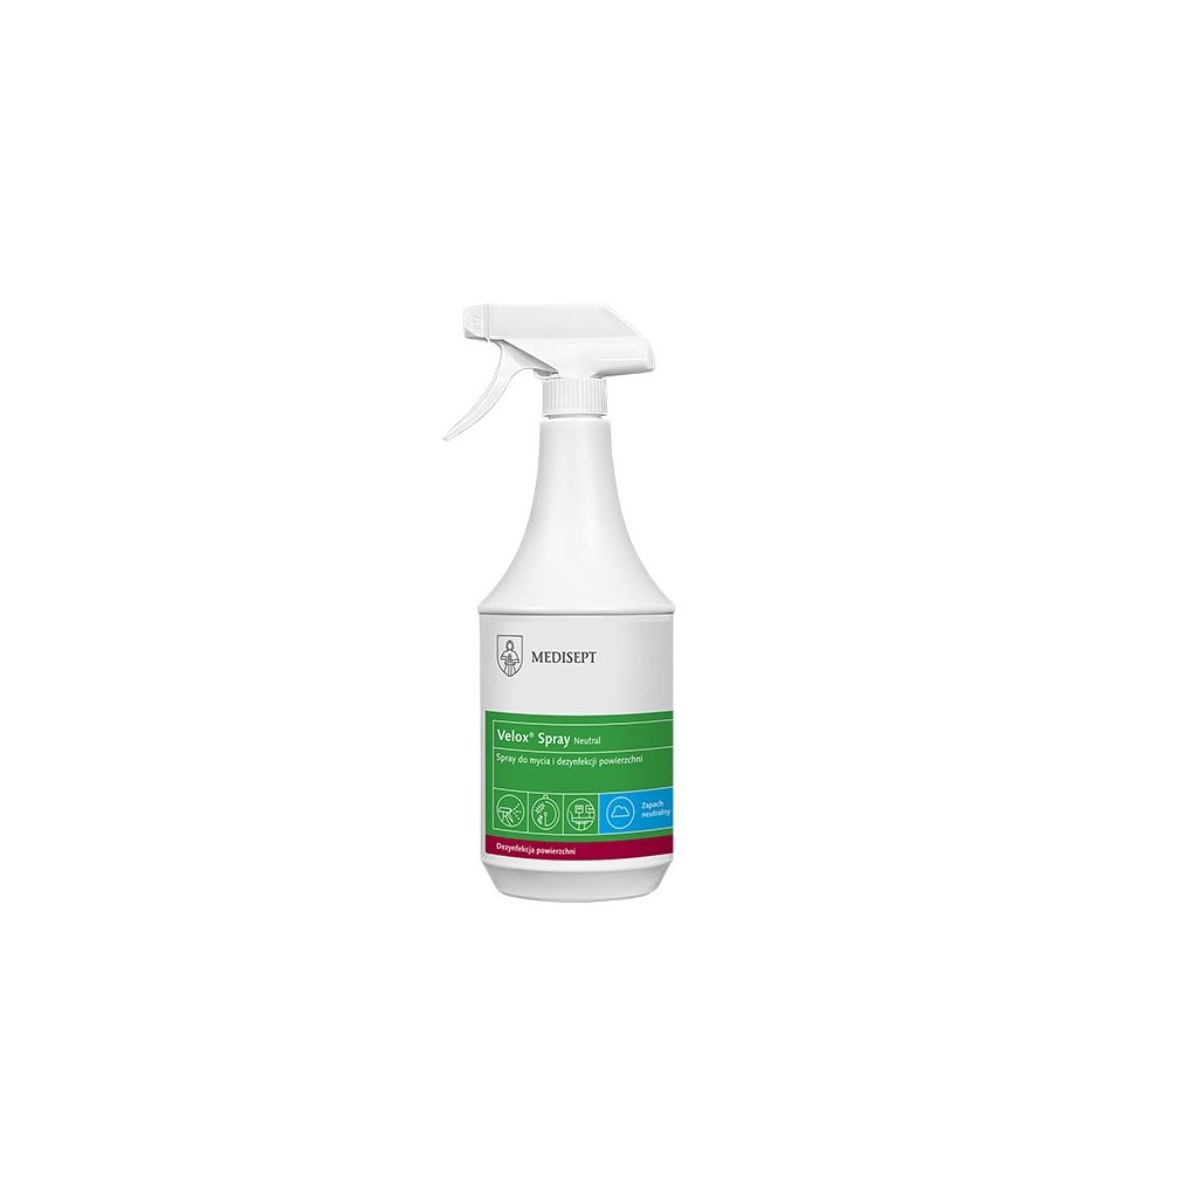 Medisept Velox Spray 1L